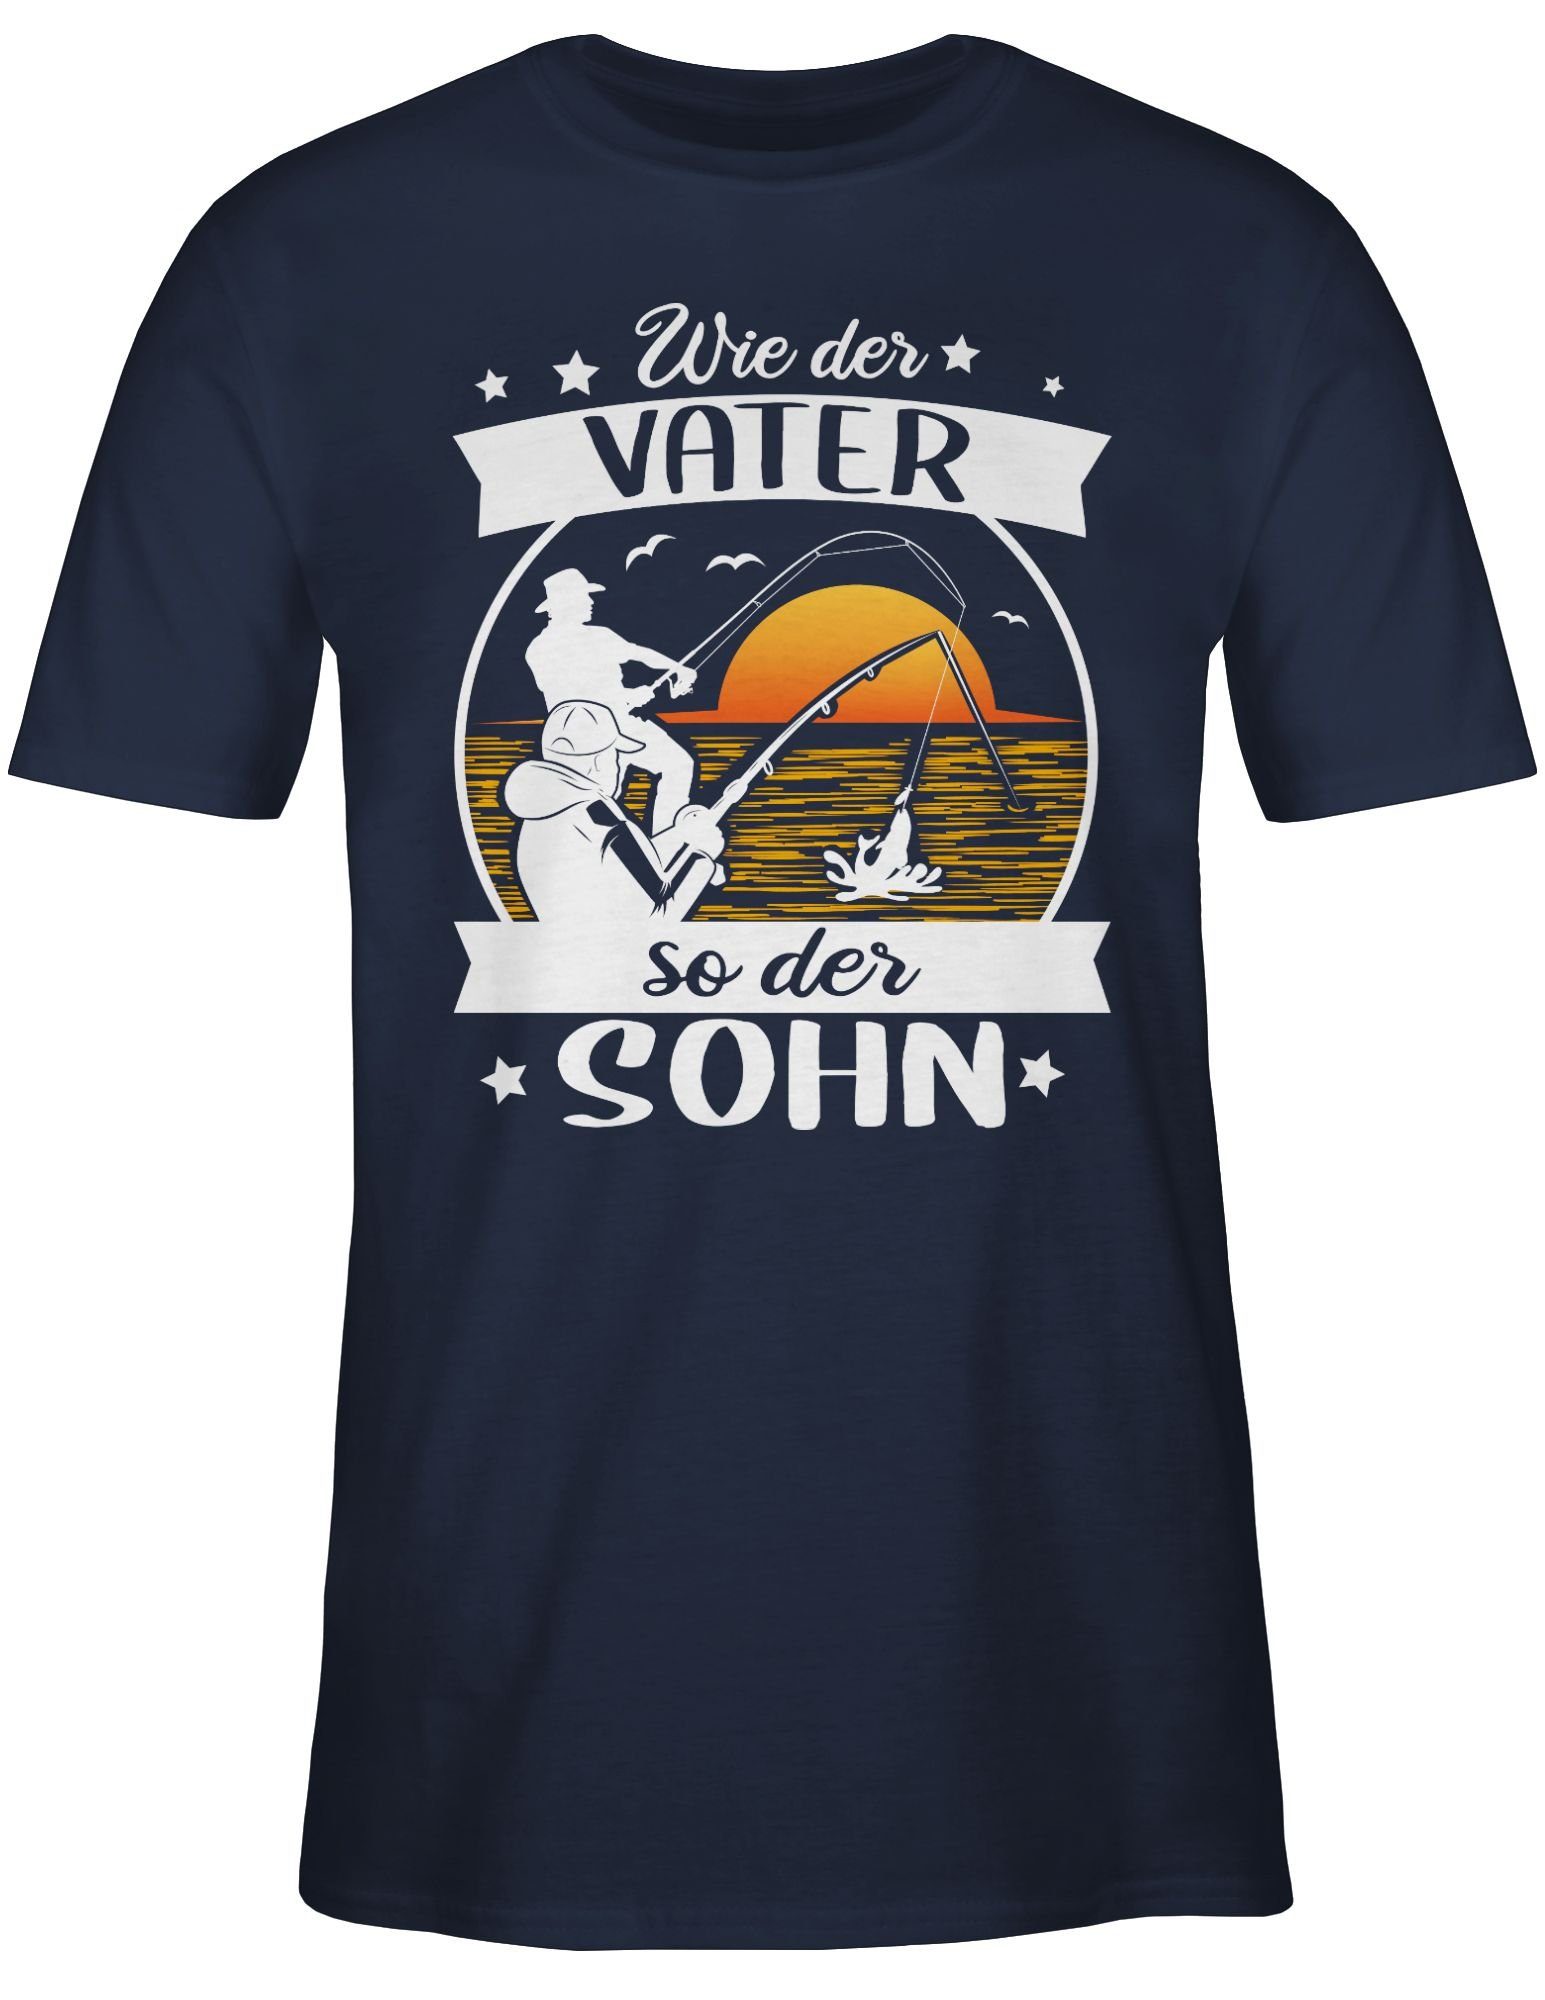 3 Vater der - Angler Wie Sohn Geschenke so Shirtracer T-Shirt - Angeln der Navy weiß/orange Blau